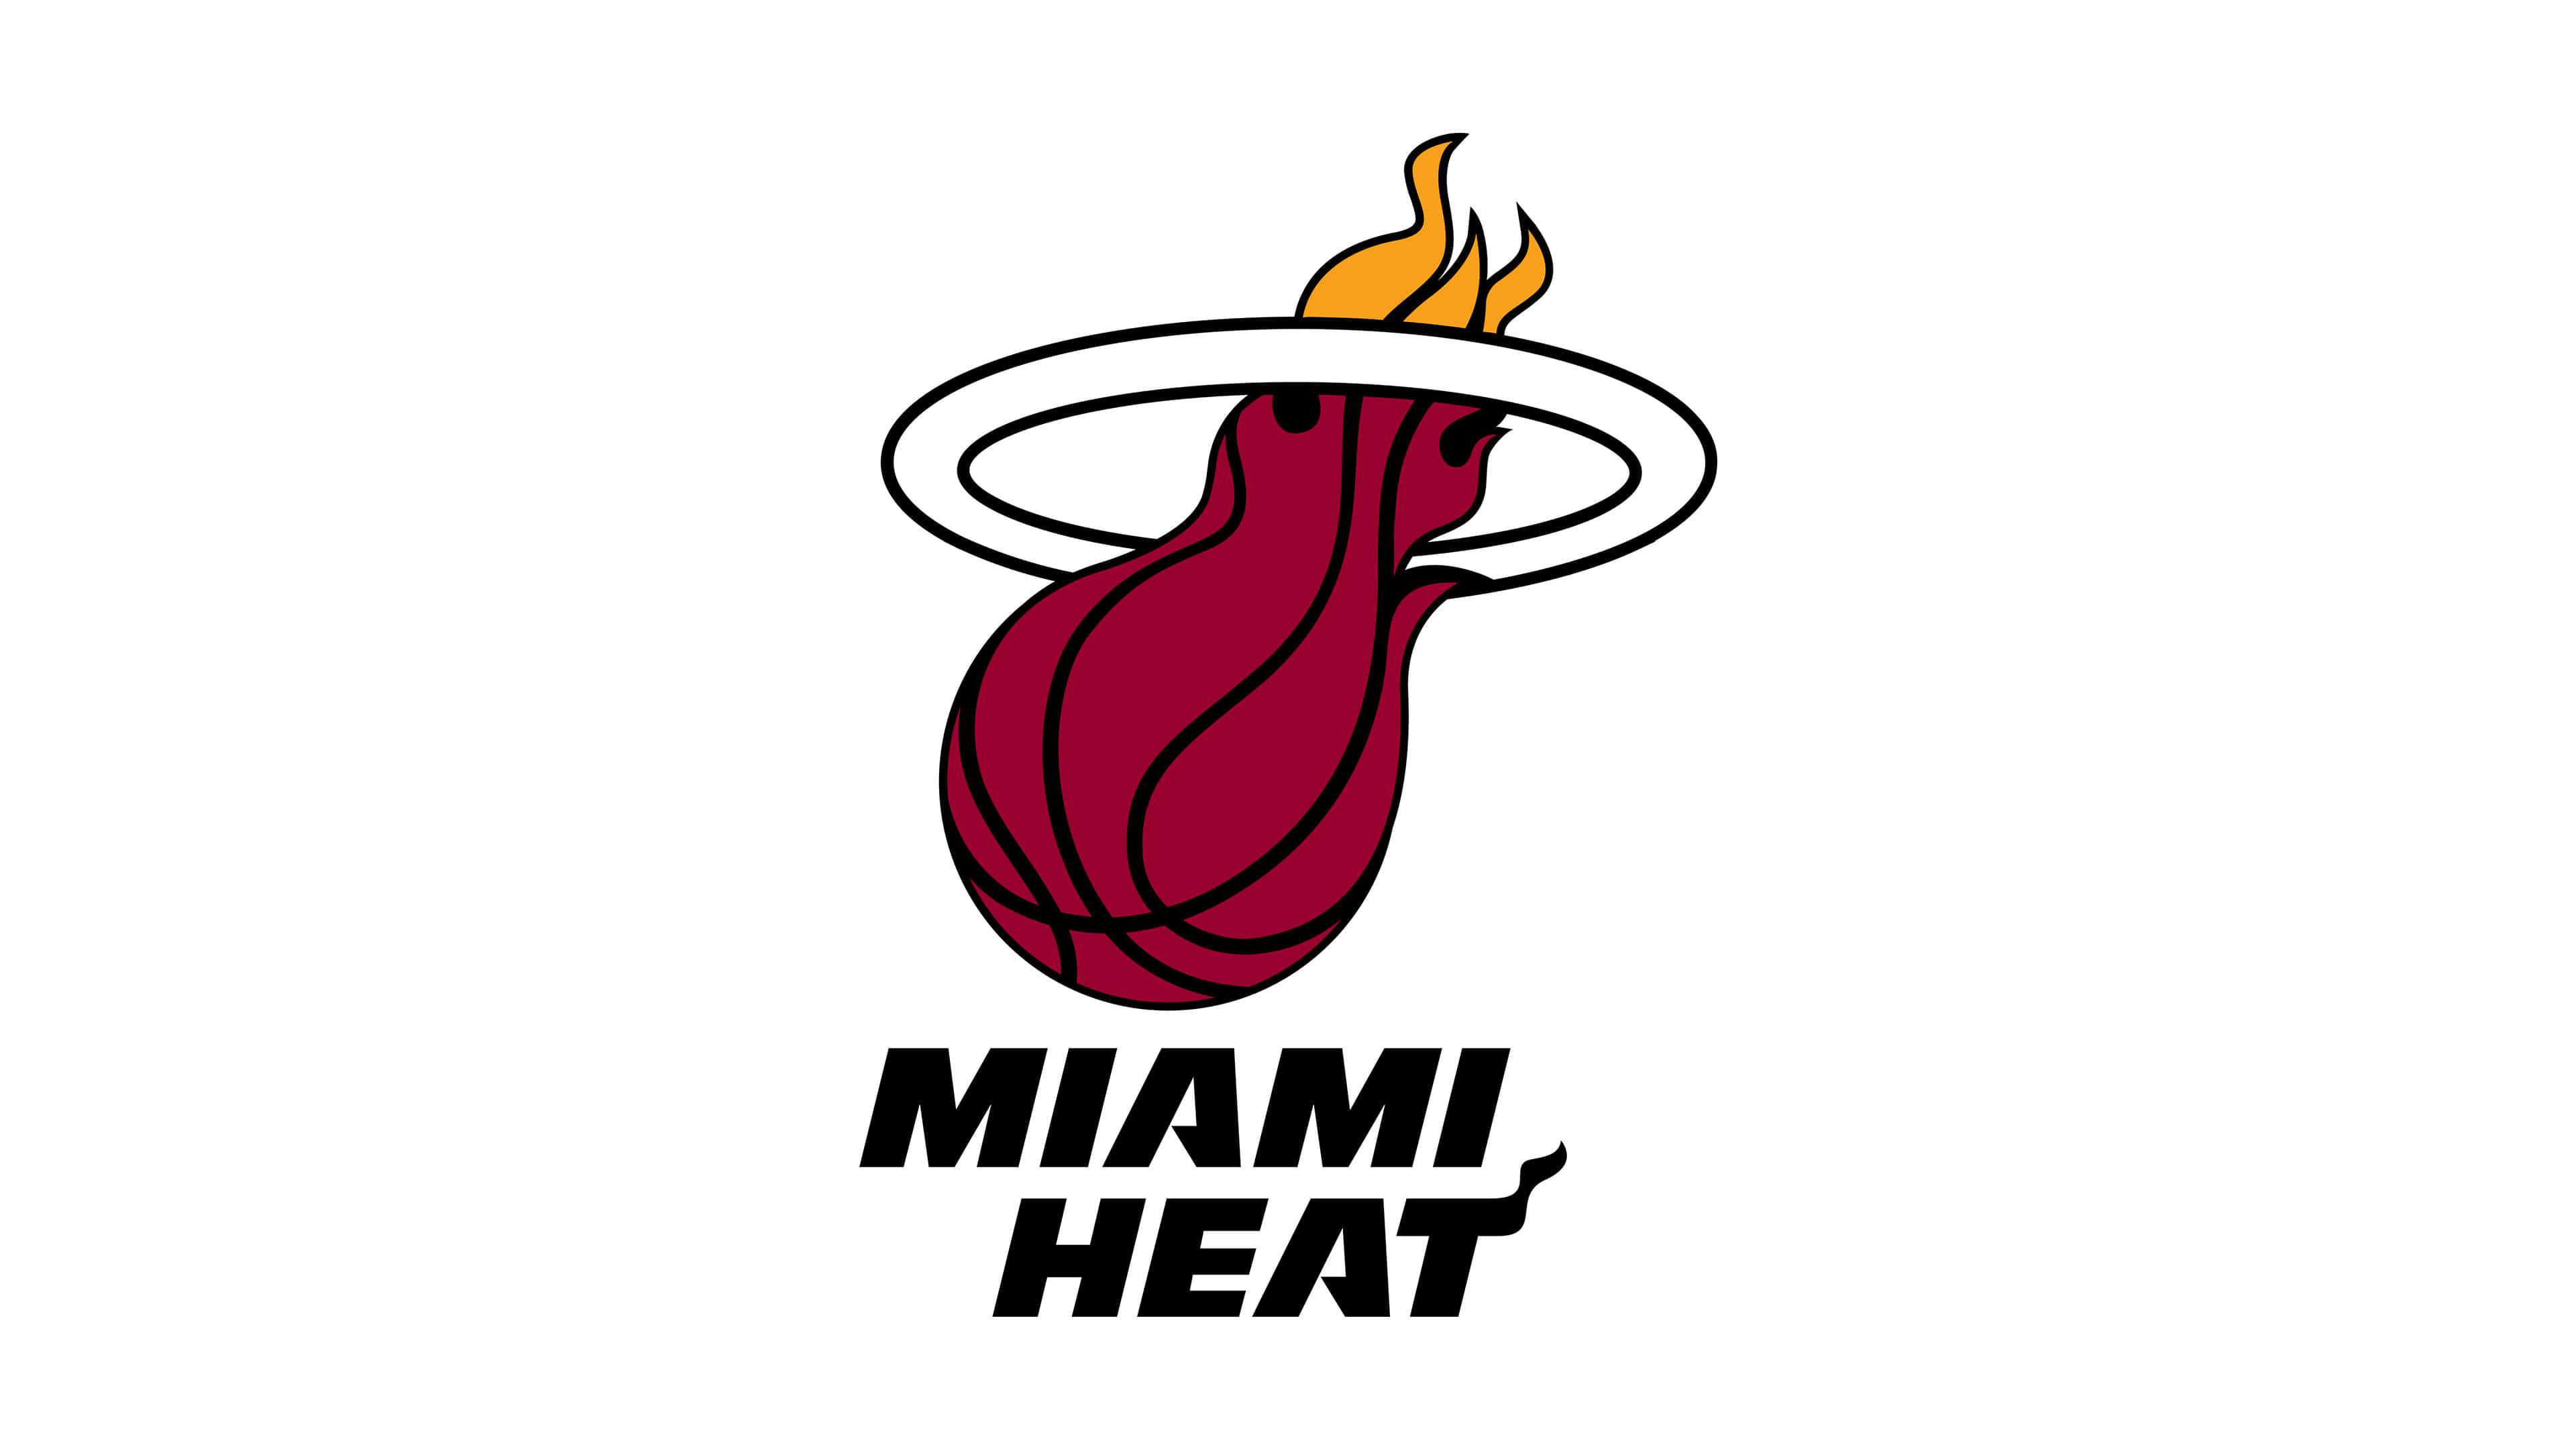 Miami Heat NBA Logo UHD 4K Wallpaper | Pixelz